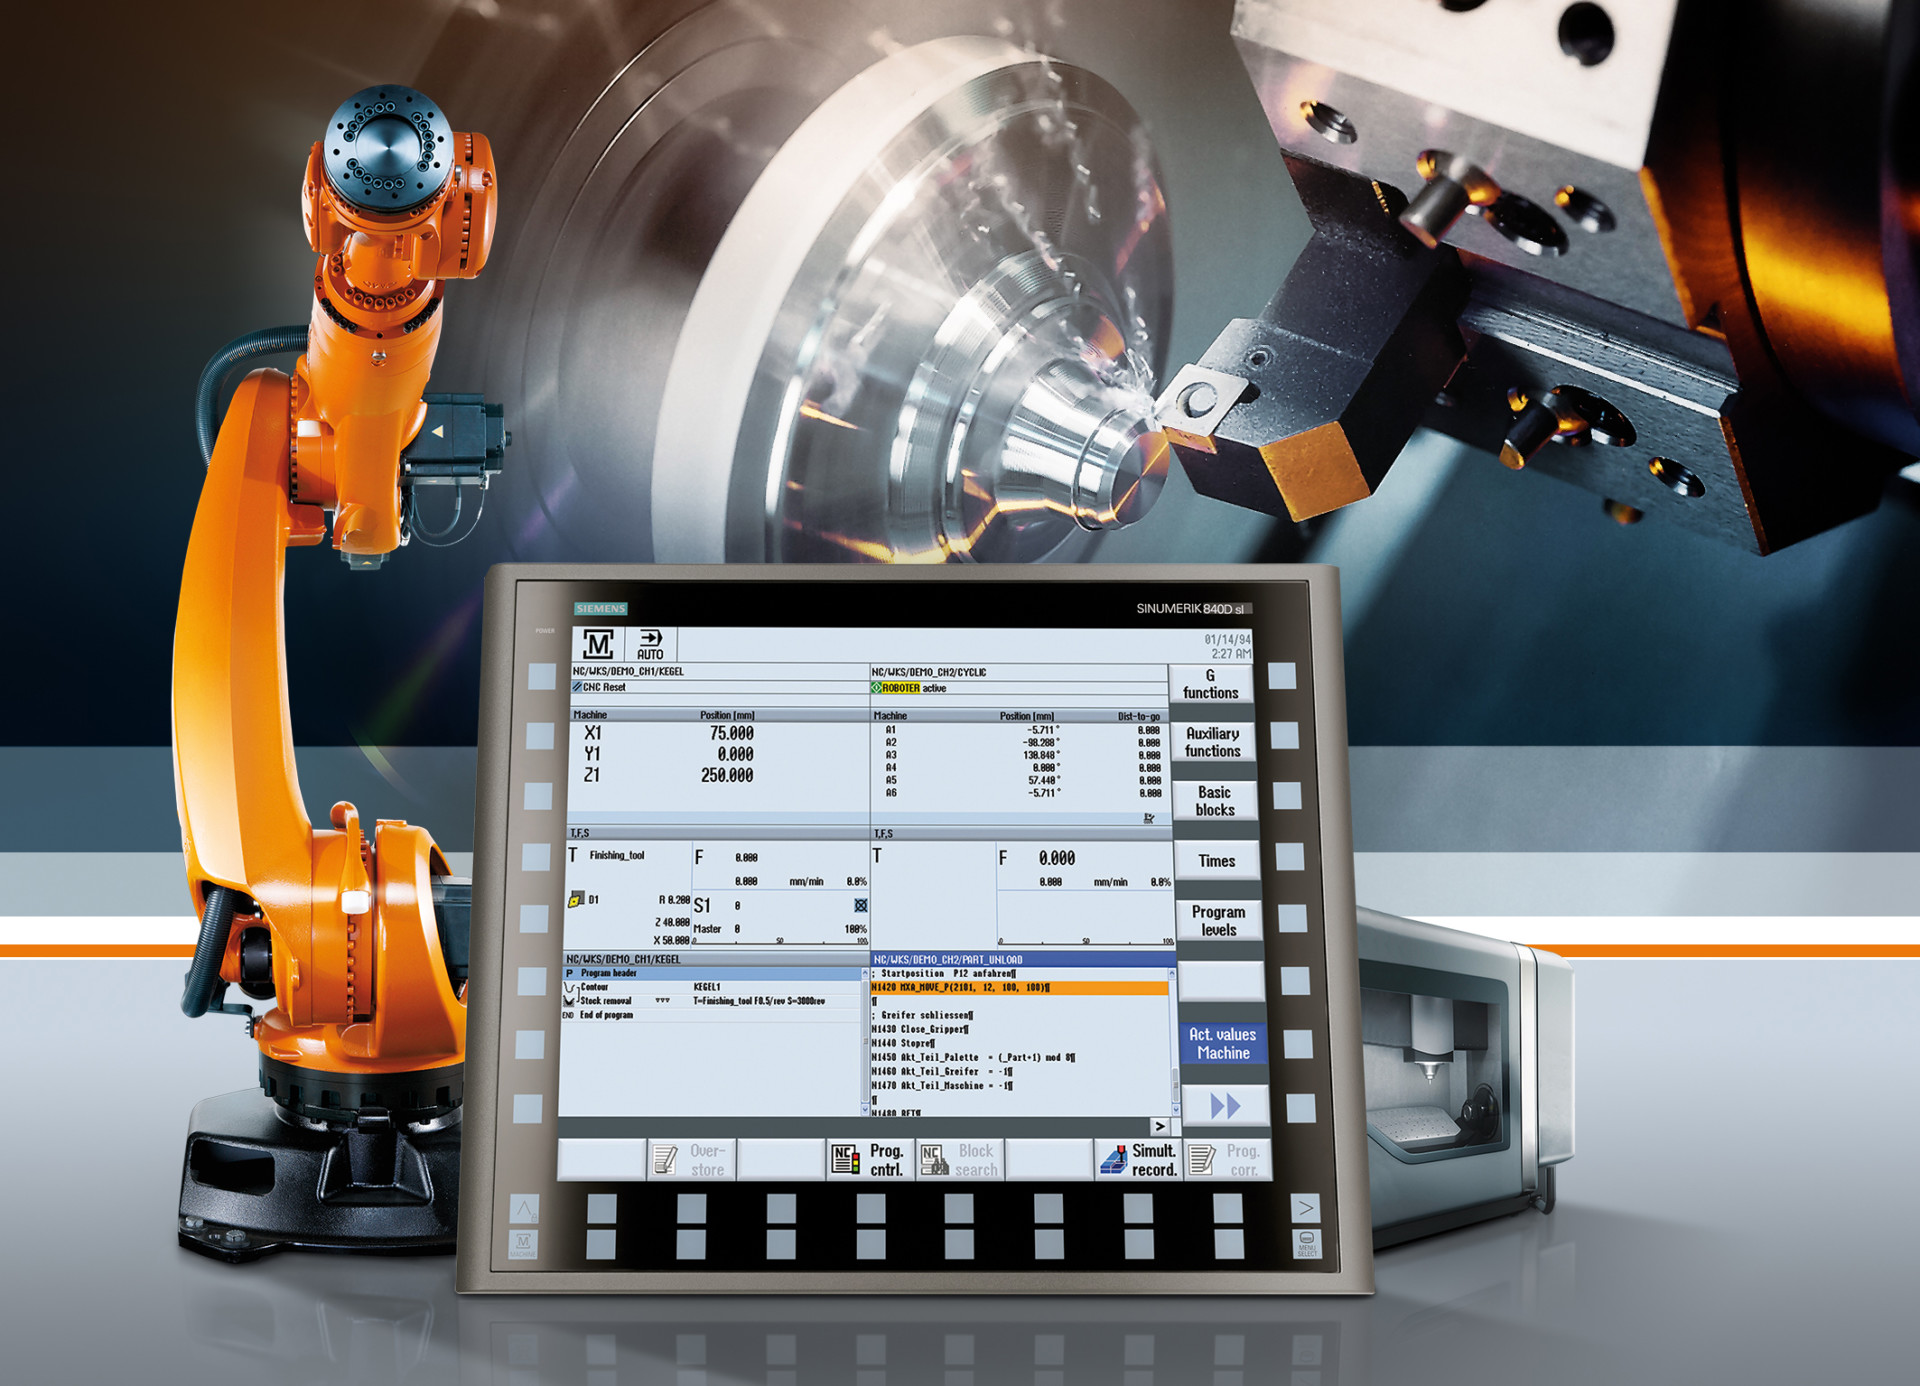 Durchgängige und integrierte Bedienung von Werkzeugmaschinen und Robotern / Seamless, integrated operation of machine tools and robotics